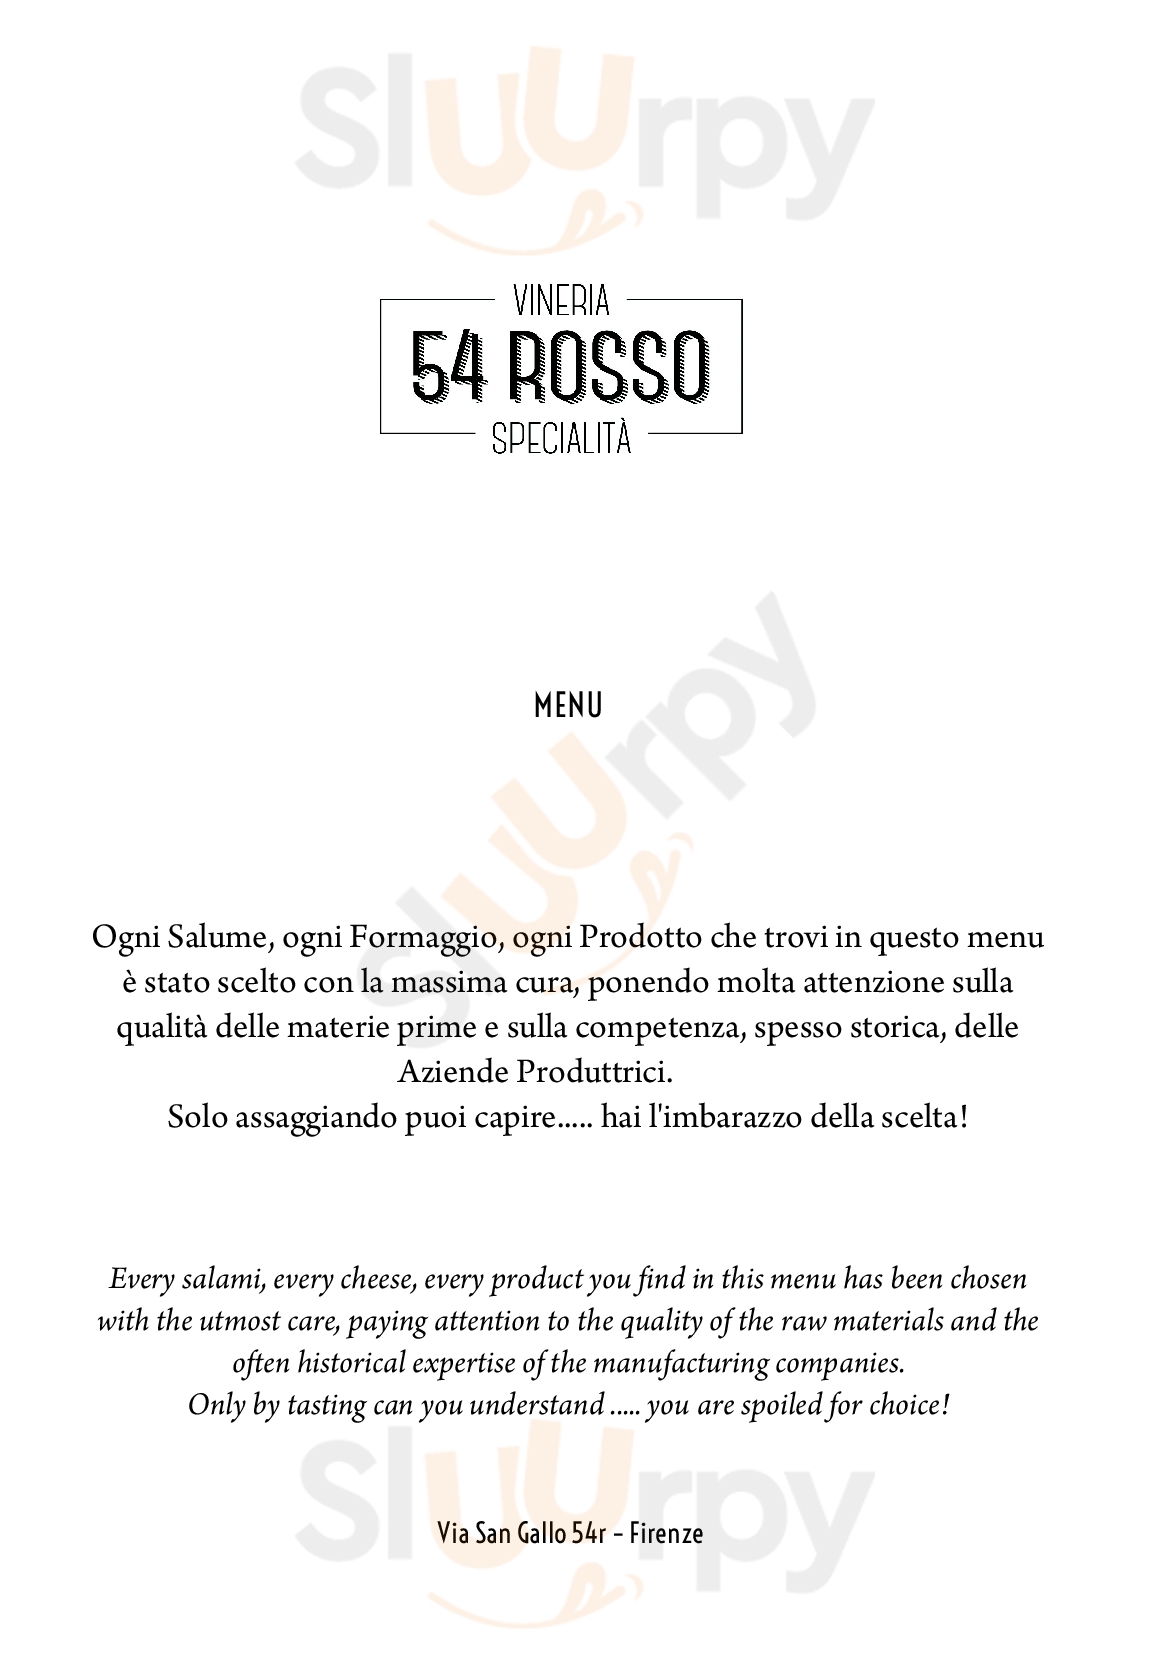 54 Rosso Vineria Specialita' Firenze menù 1 pagina